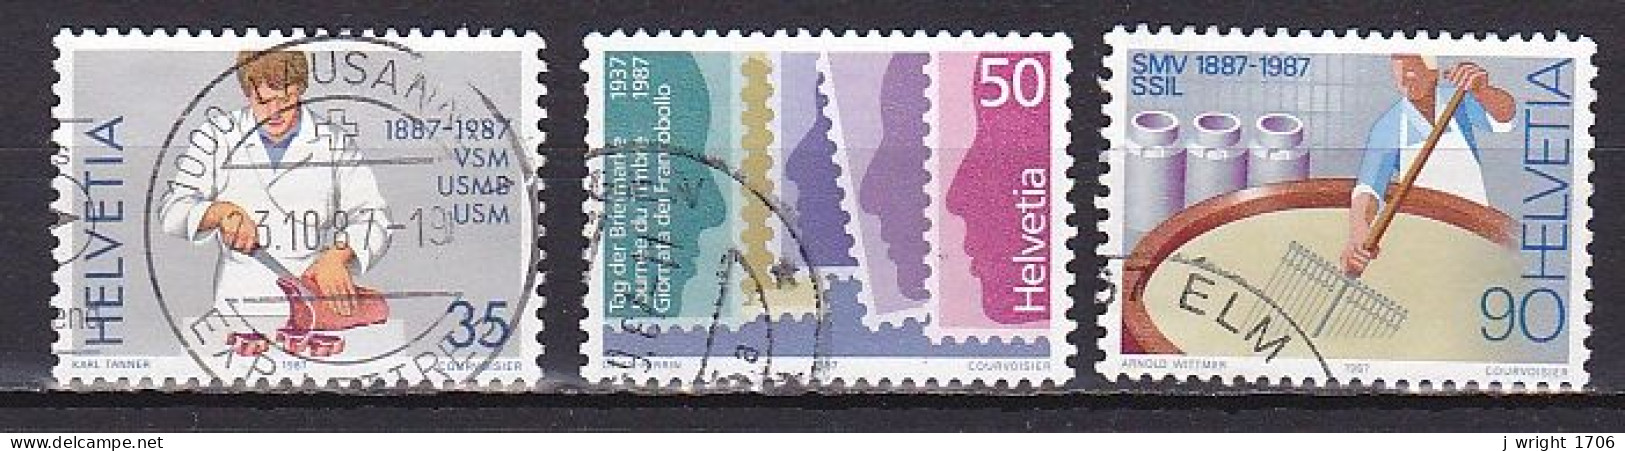 Switzerland, 1987, Stamp Day & Publicity Issue, Set, USED - Gebruikt